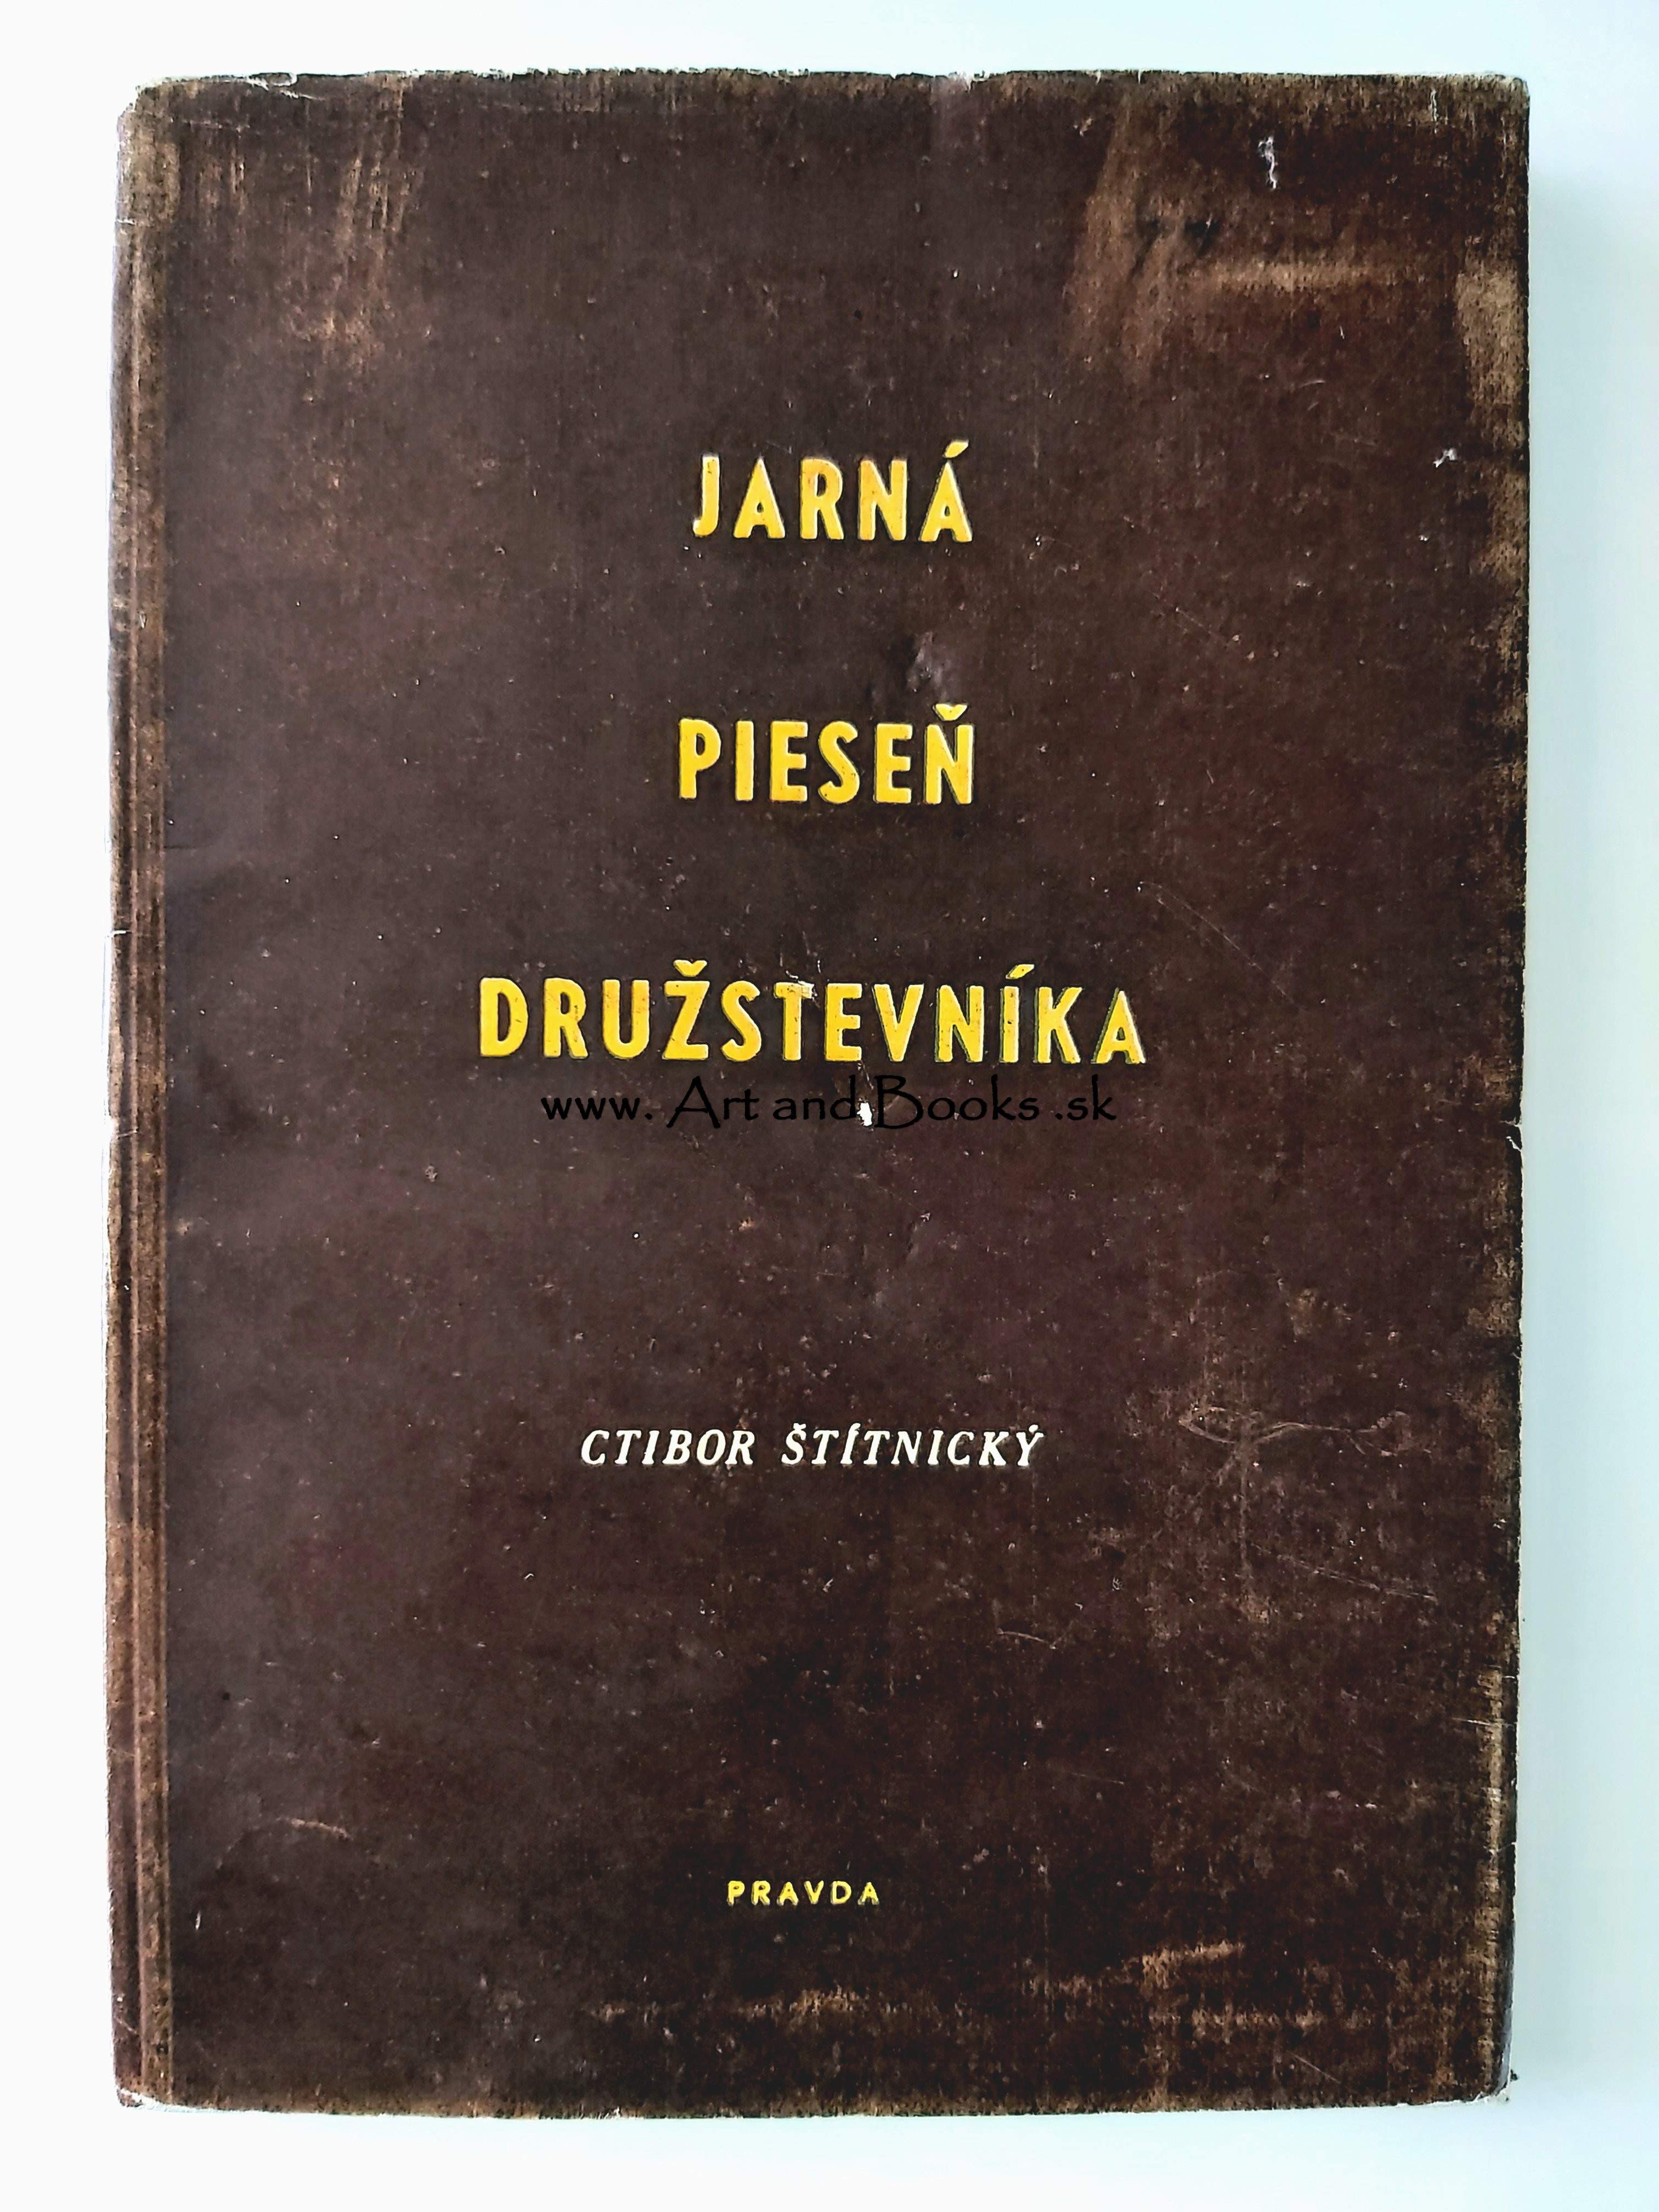 Ctibor Štítnický - Jarná pieseň družstevníka (1950)	 ●	154150